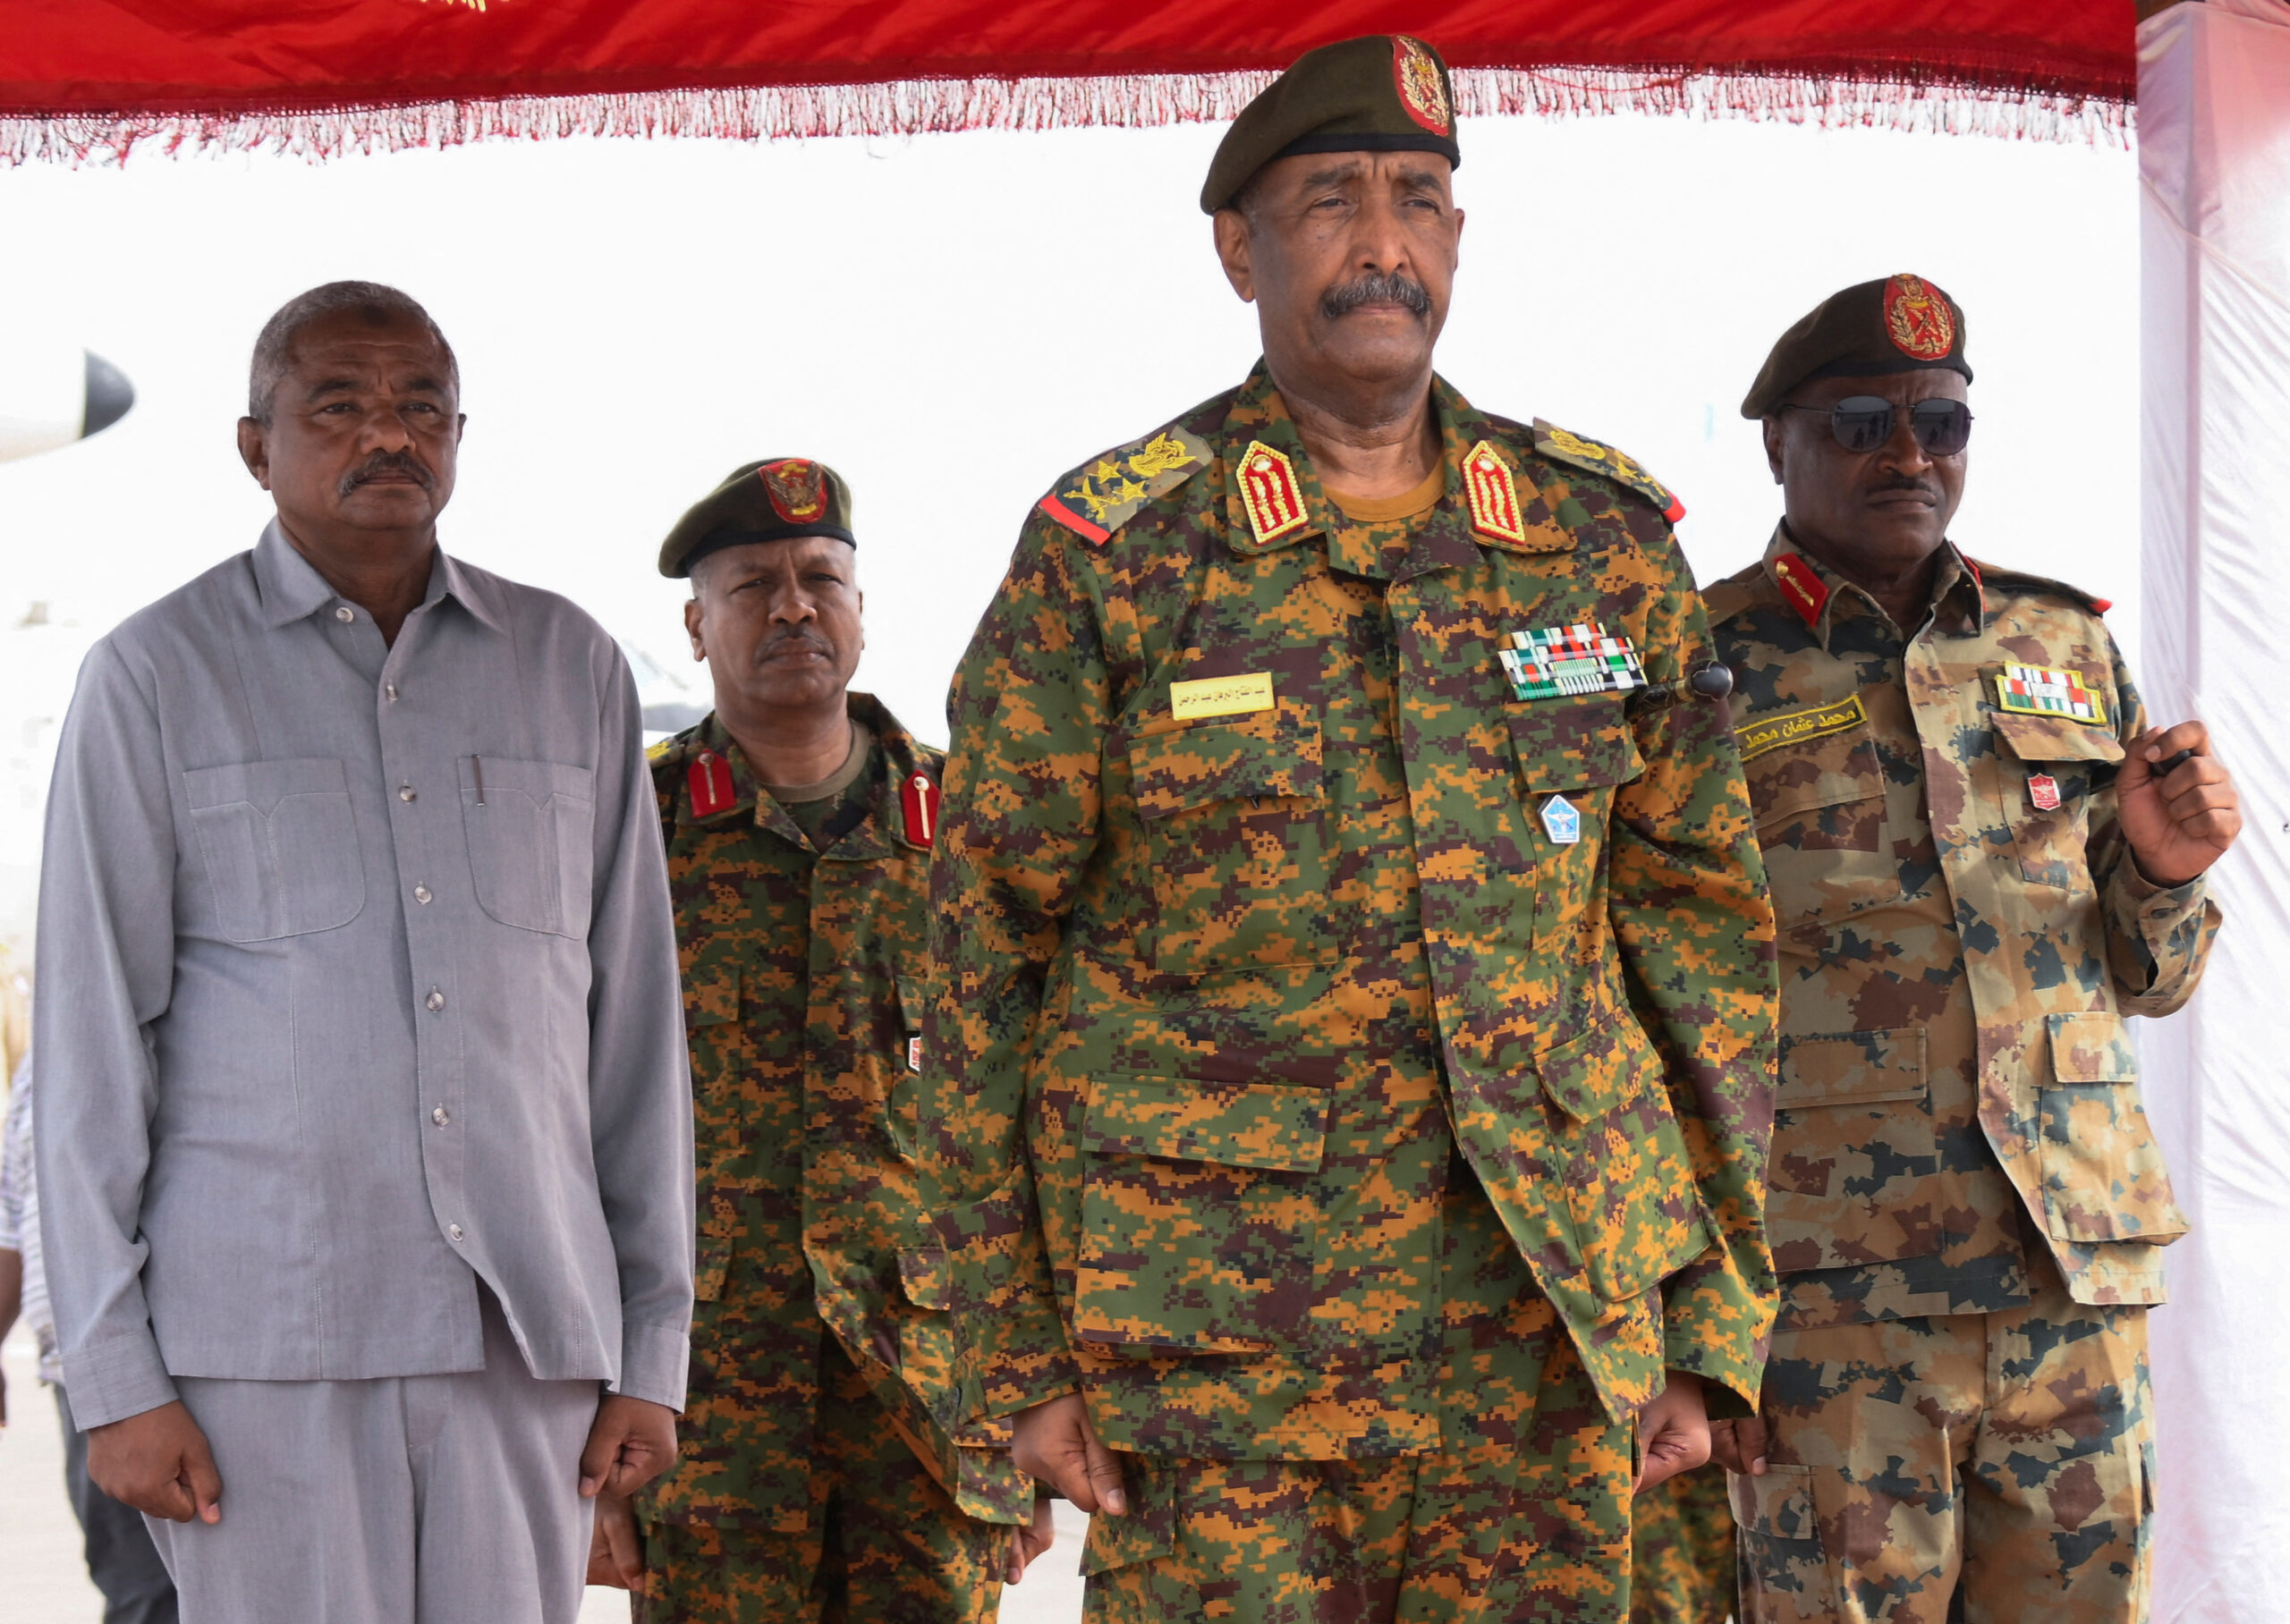 Sudan's military